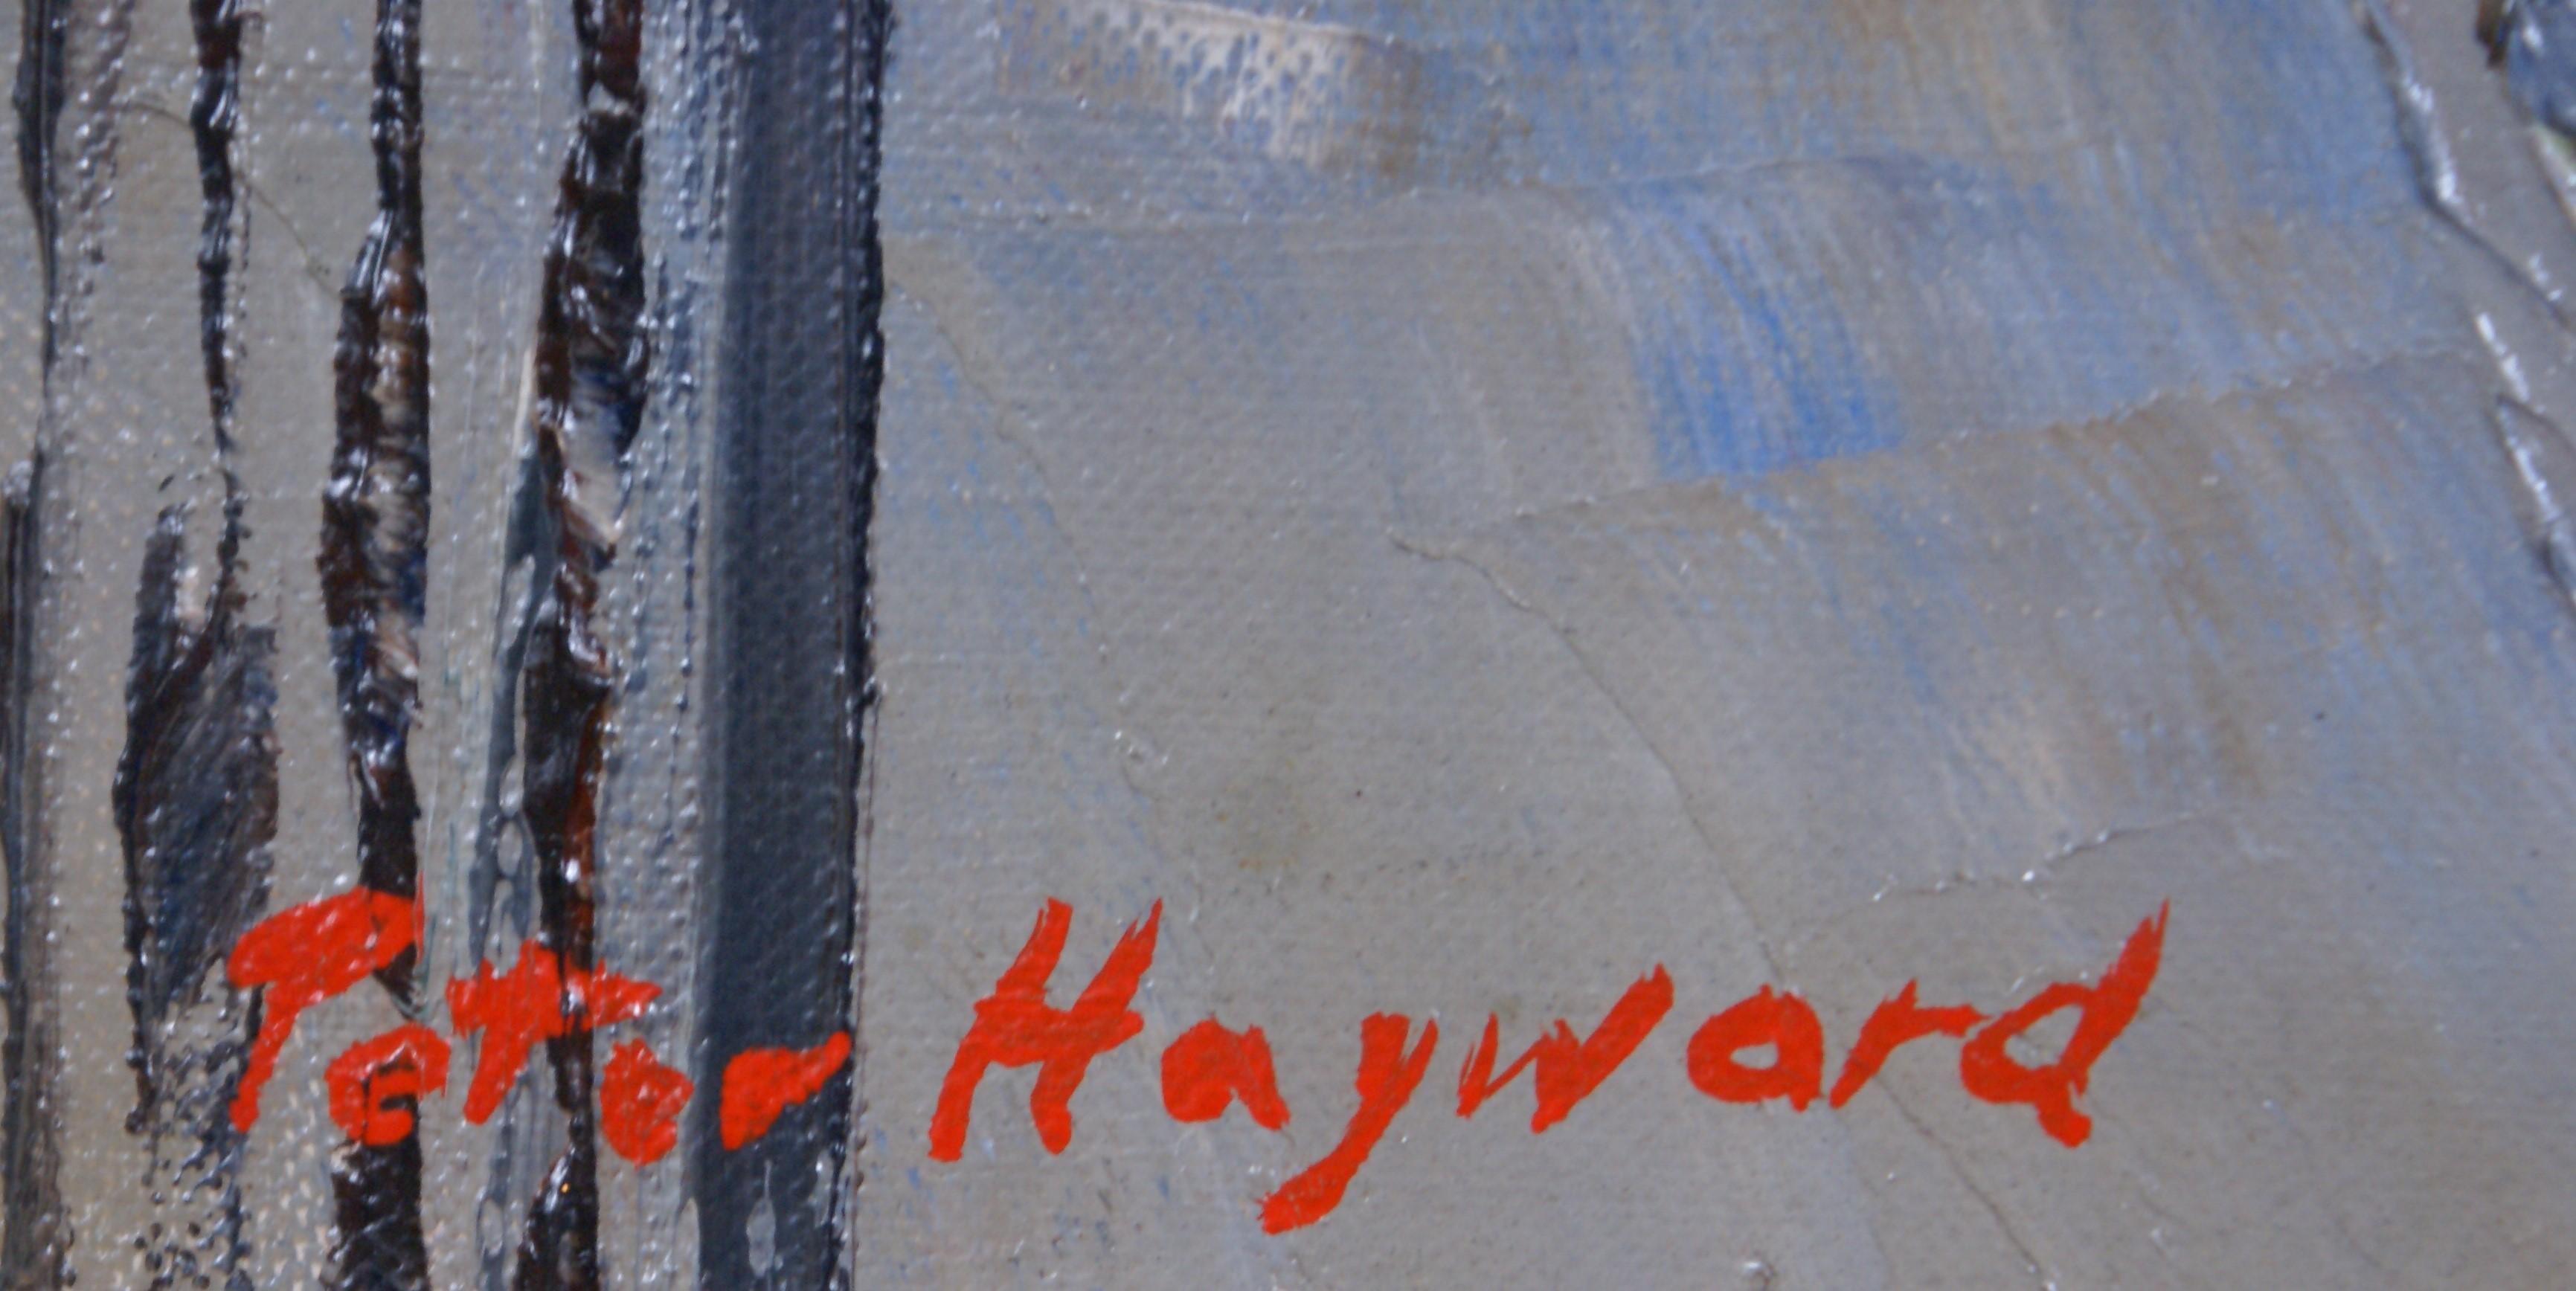 peter hayward paintings for sale